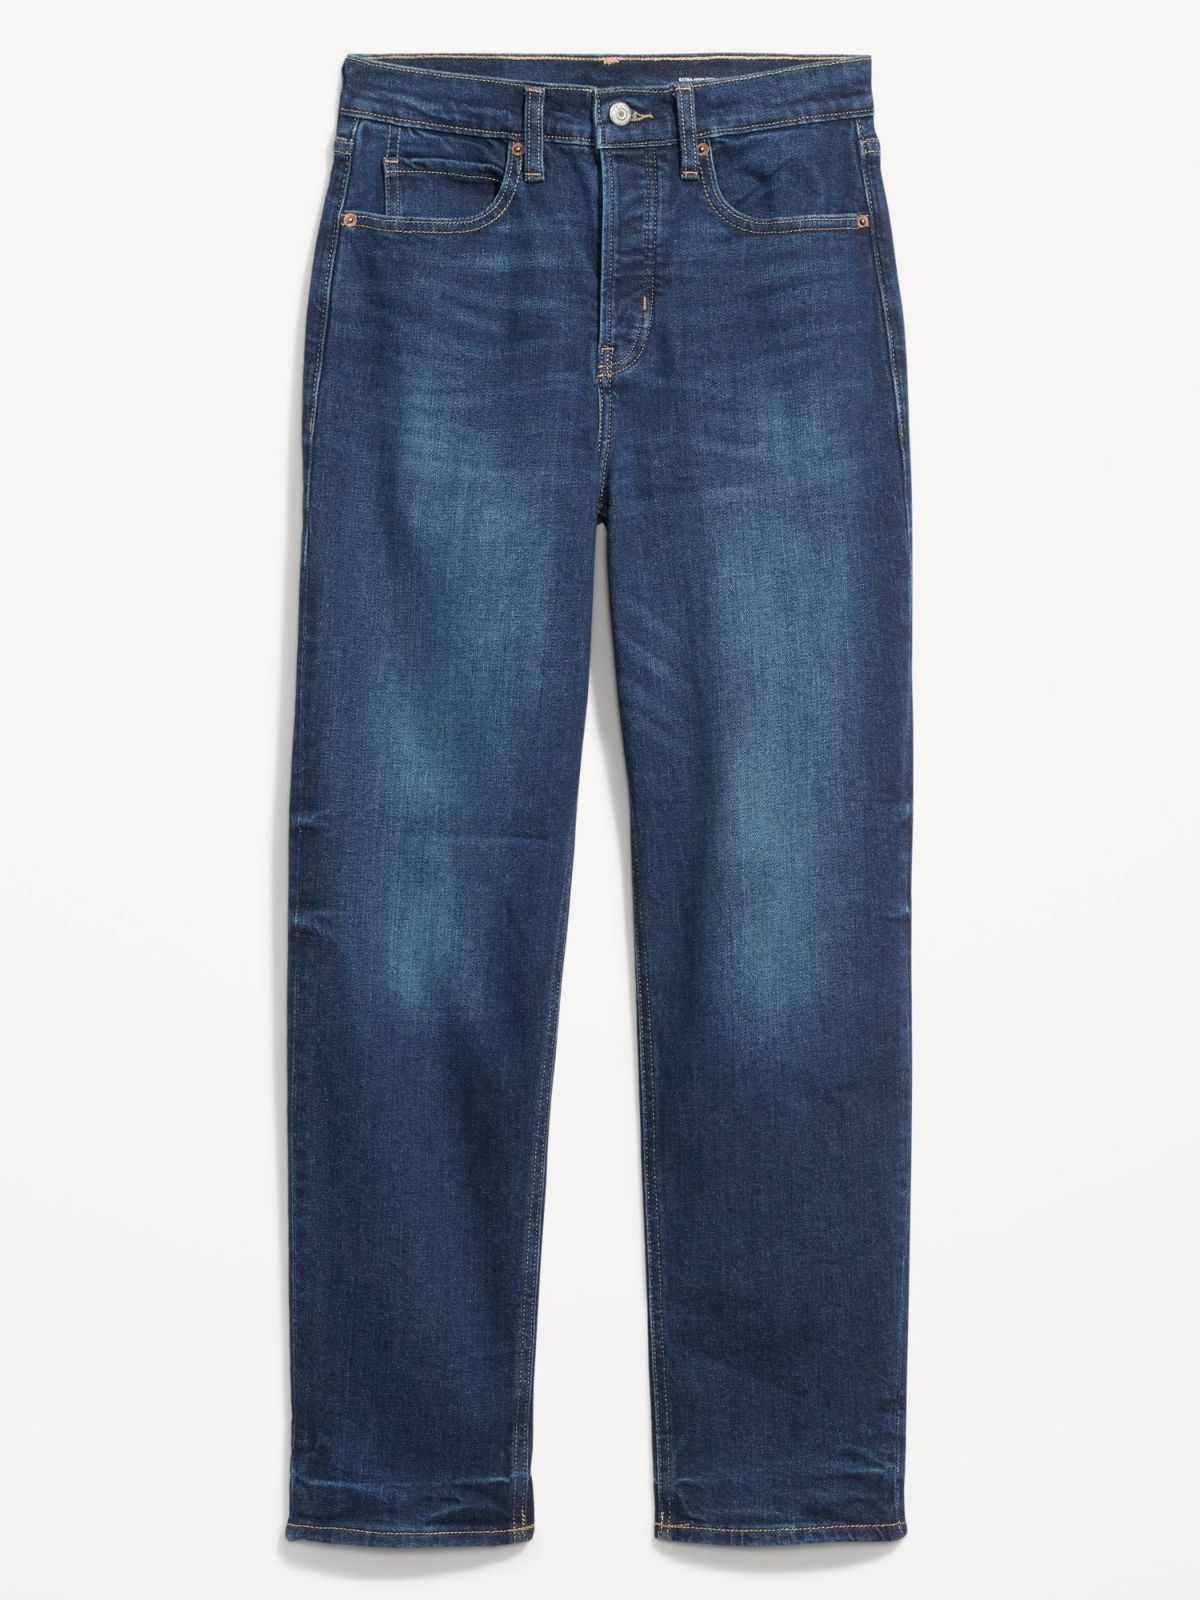  ג'ינס ארוך בגזרה אקסטרה גבוהה של OLD NAVY